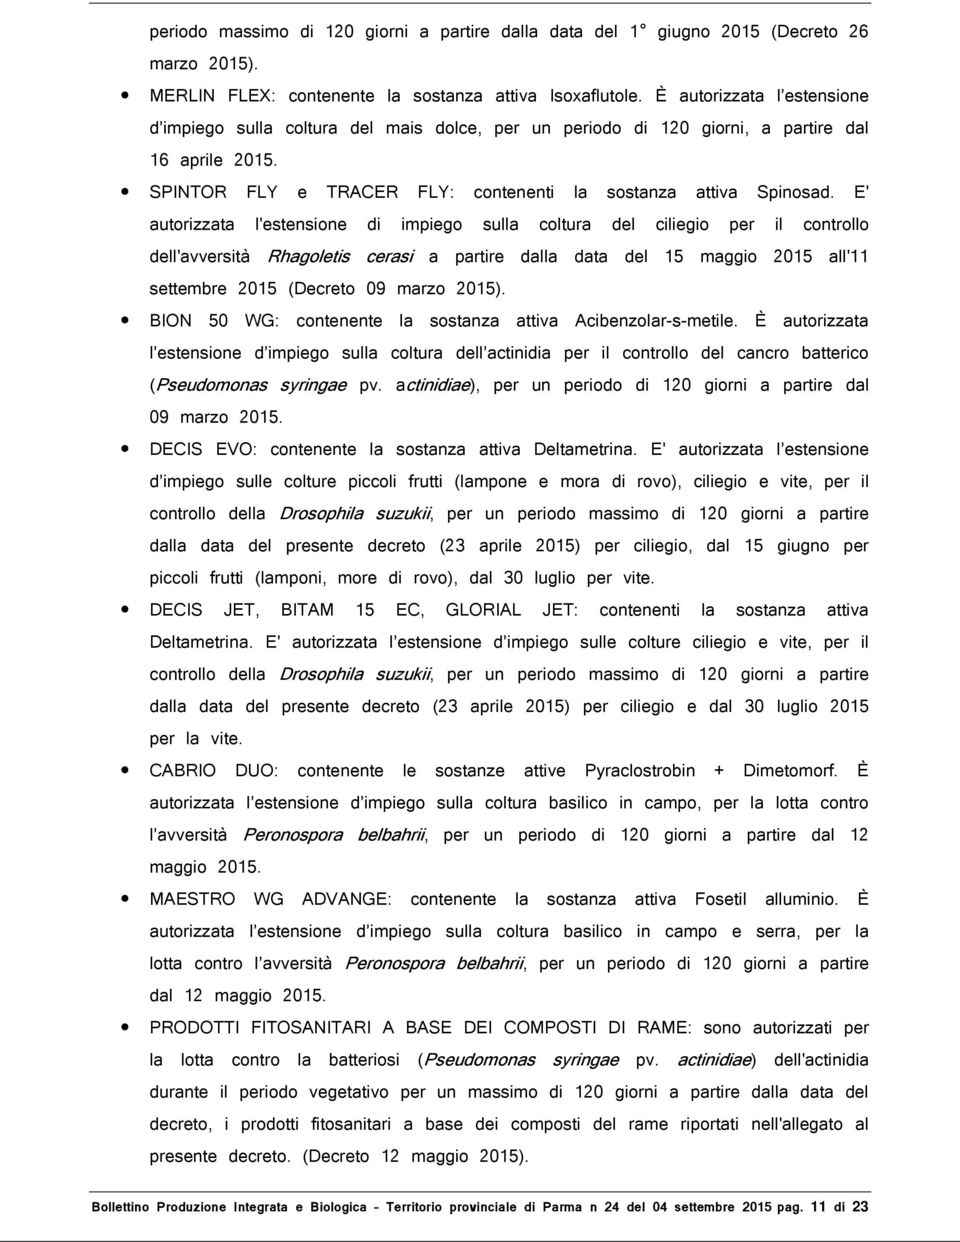 E' autorizzata l'estensione di impiego sulla coltura del ciliegio per il controllo dell'avversità Rhagoletis cerasi a partire dalla data del 15 maggio 2015 all'11 settembre 2015 (Decreto 09 marzo